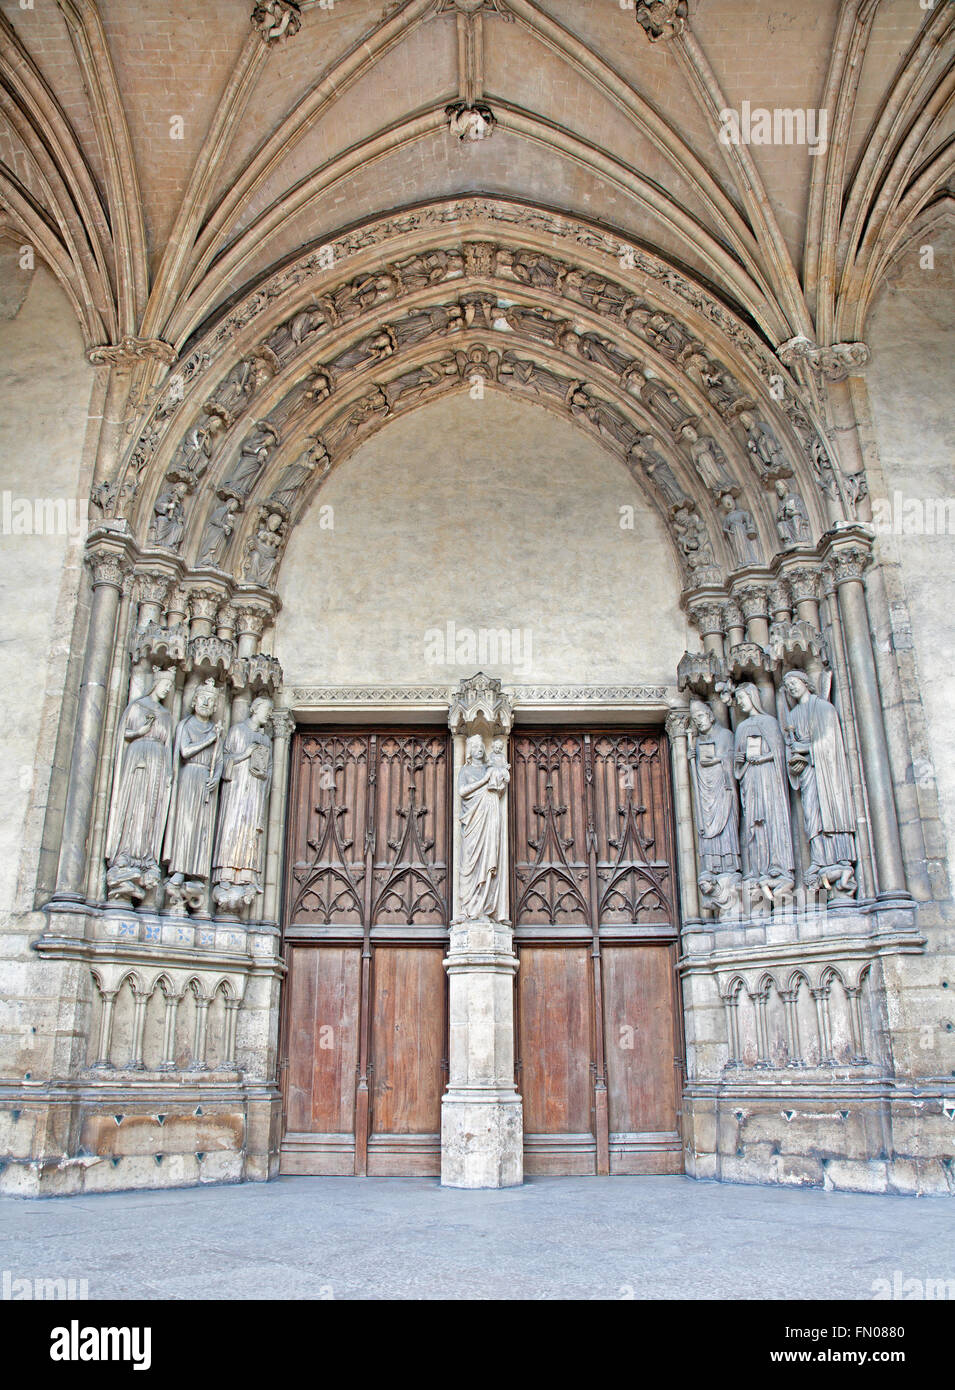 PARIS, FRANCE - Le 18 juin 2011:Le portail de Saint Germain-l'Auxerrois, église gothique. Banque D'Images